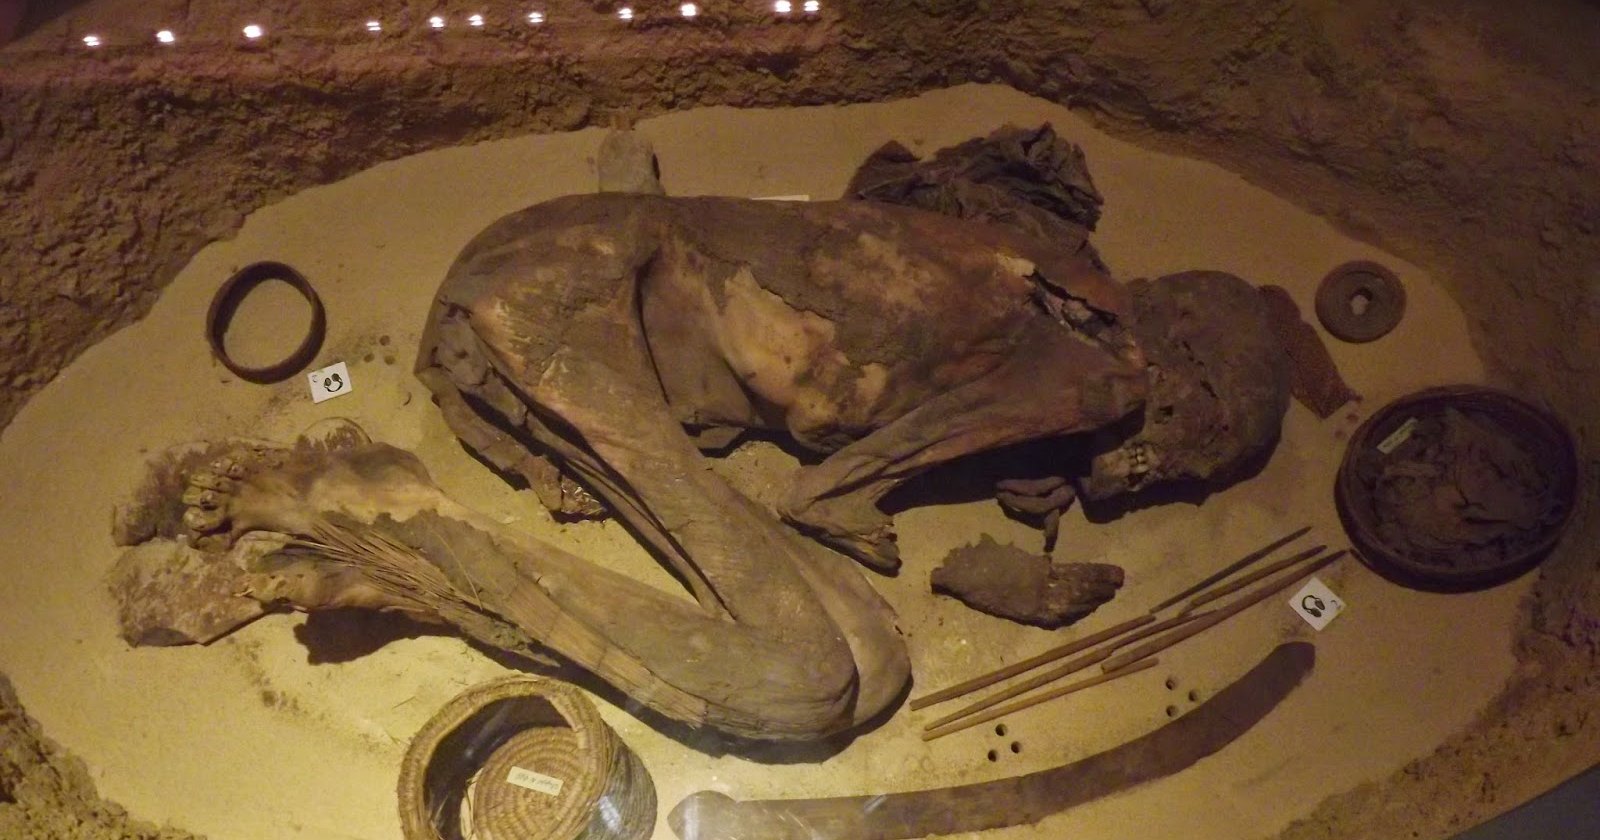 Рецепт бальзамирования древнеегипетских мумий удревнился на полтора тысячелетия